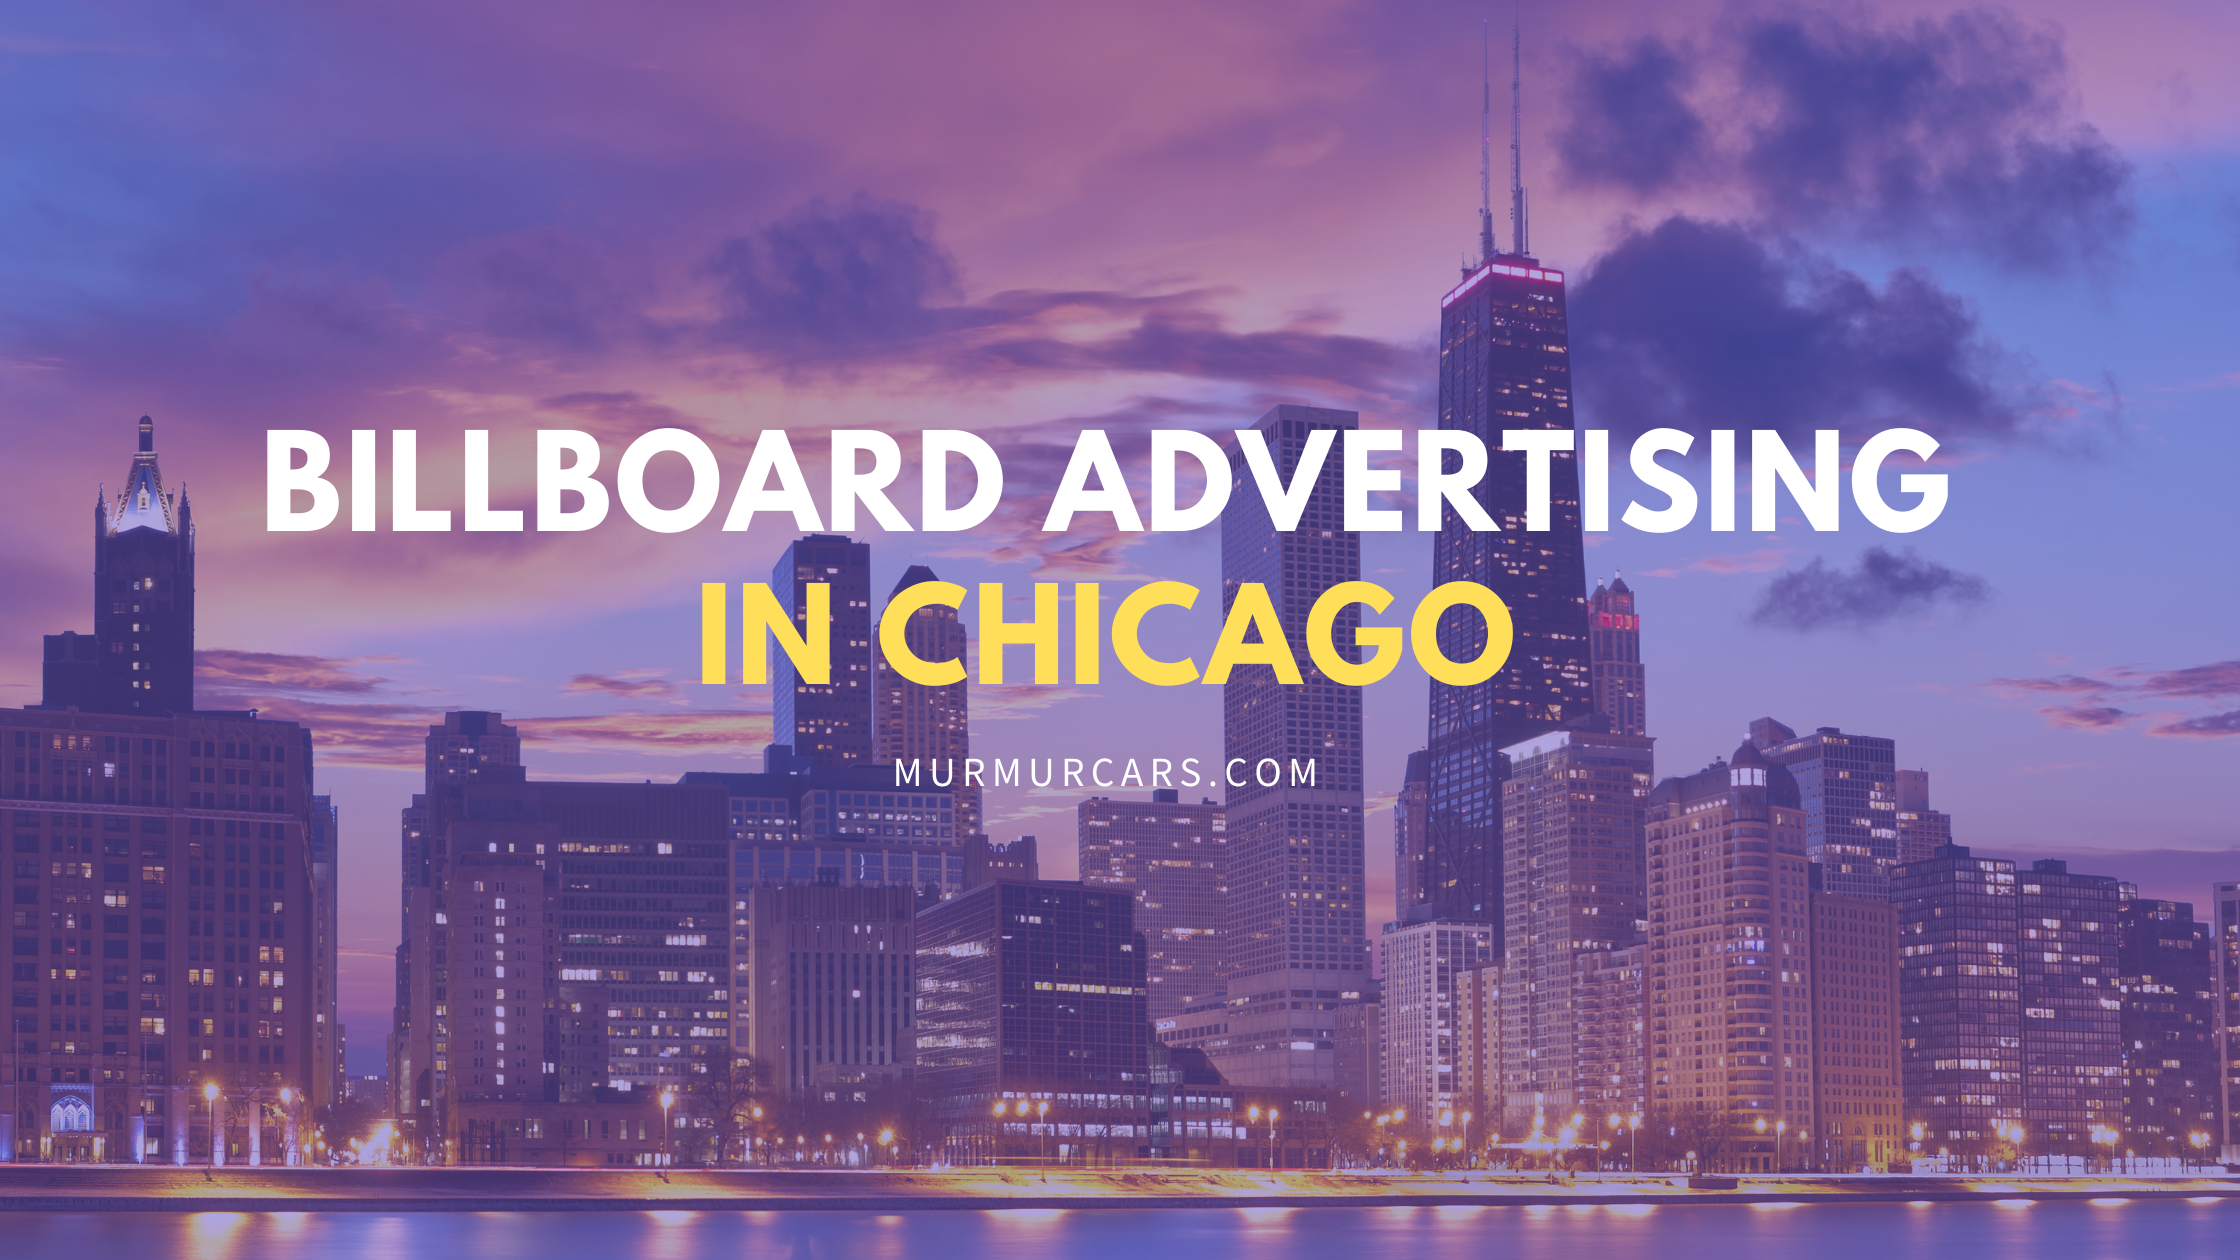 Billboard advertising Illinois